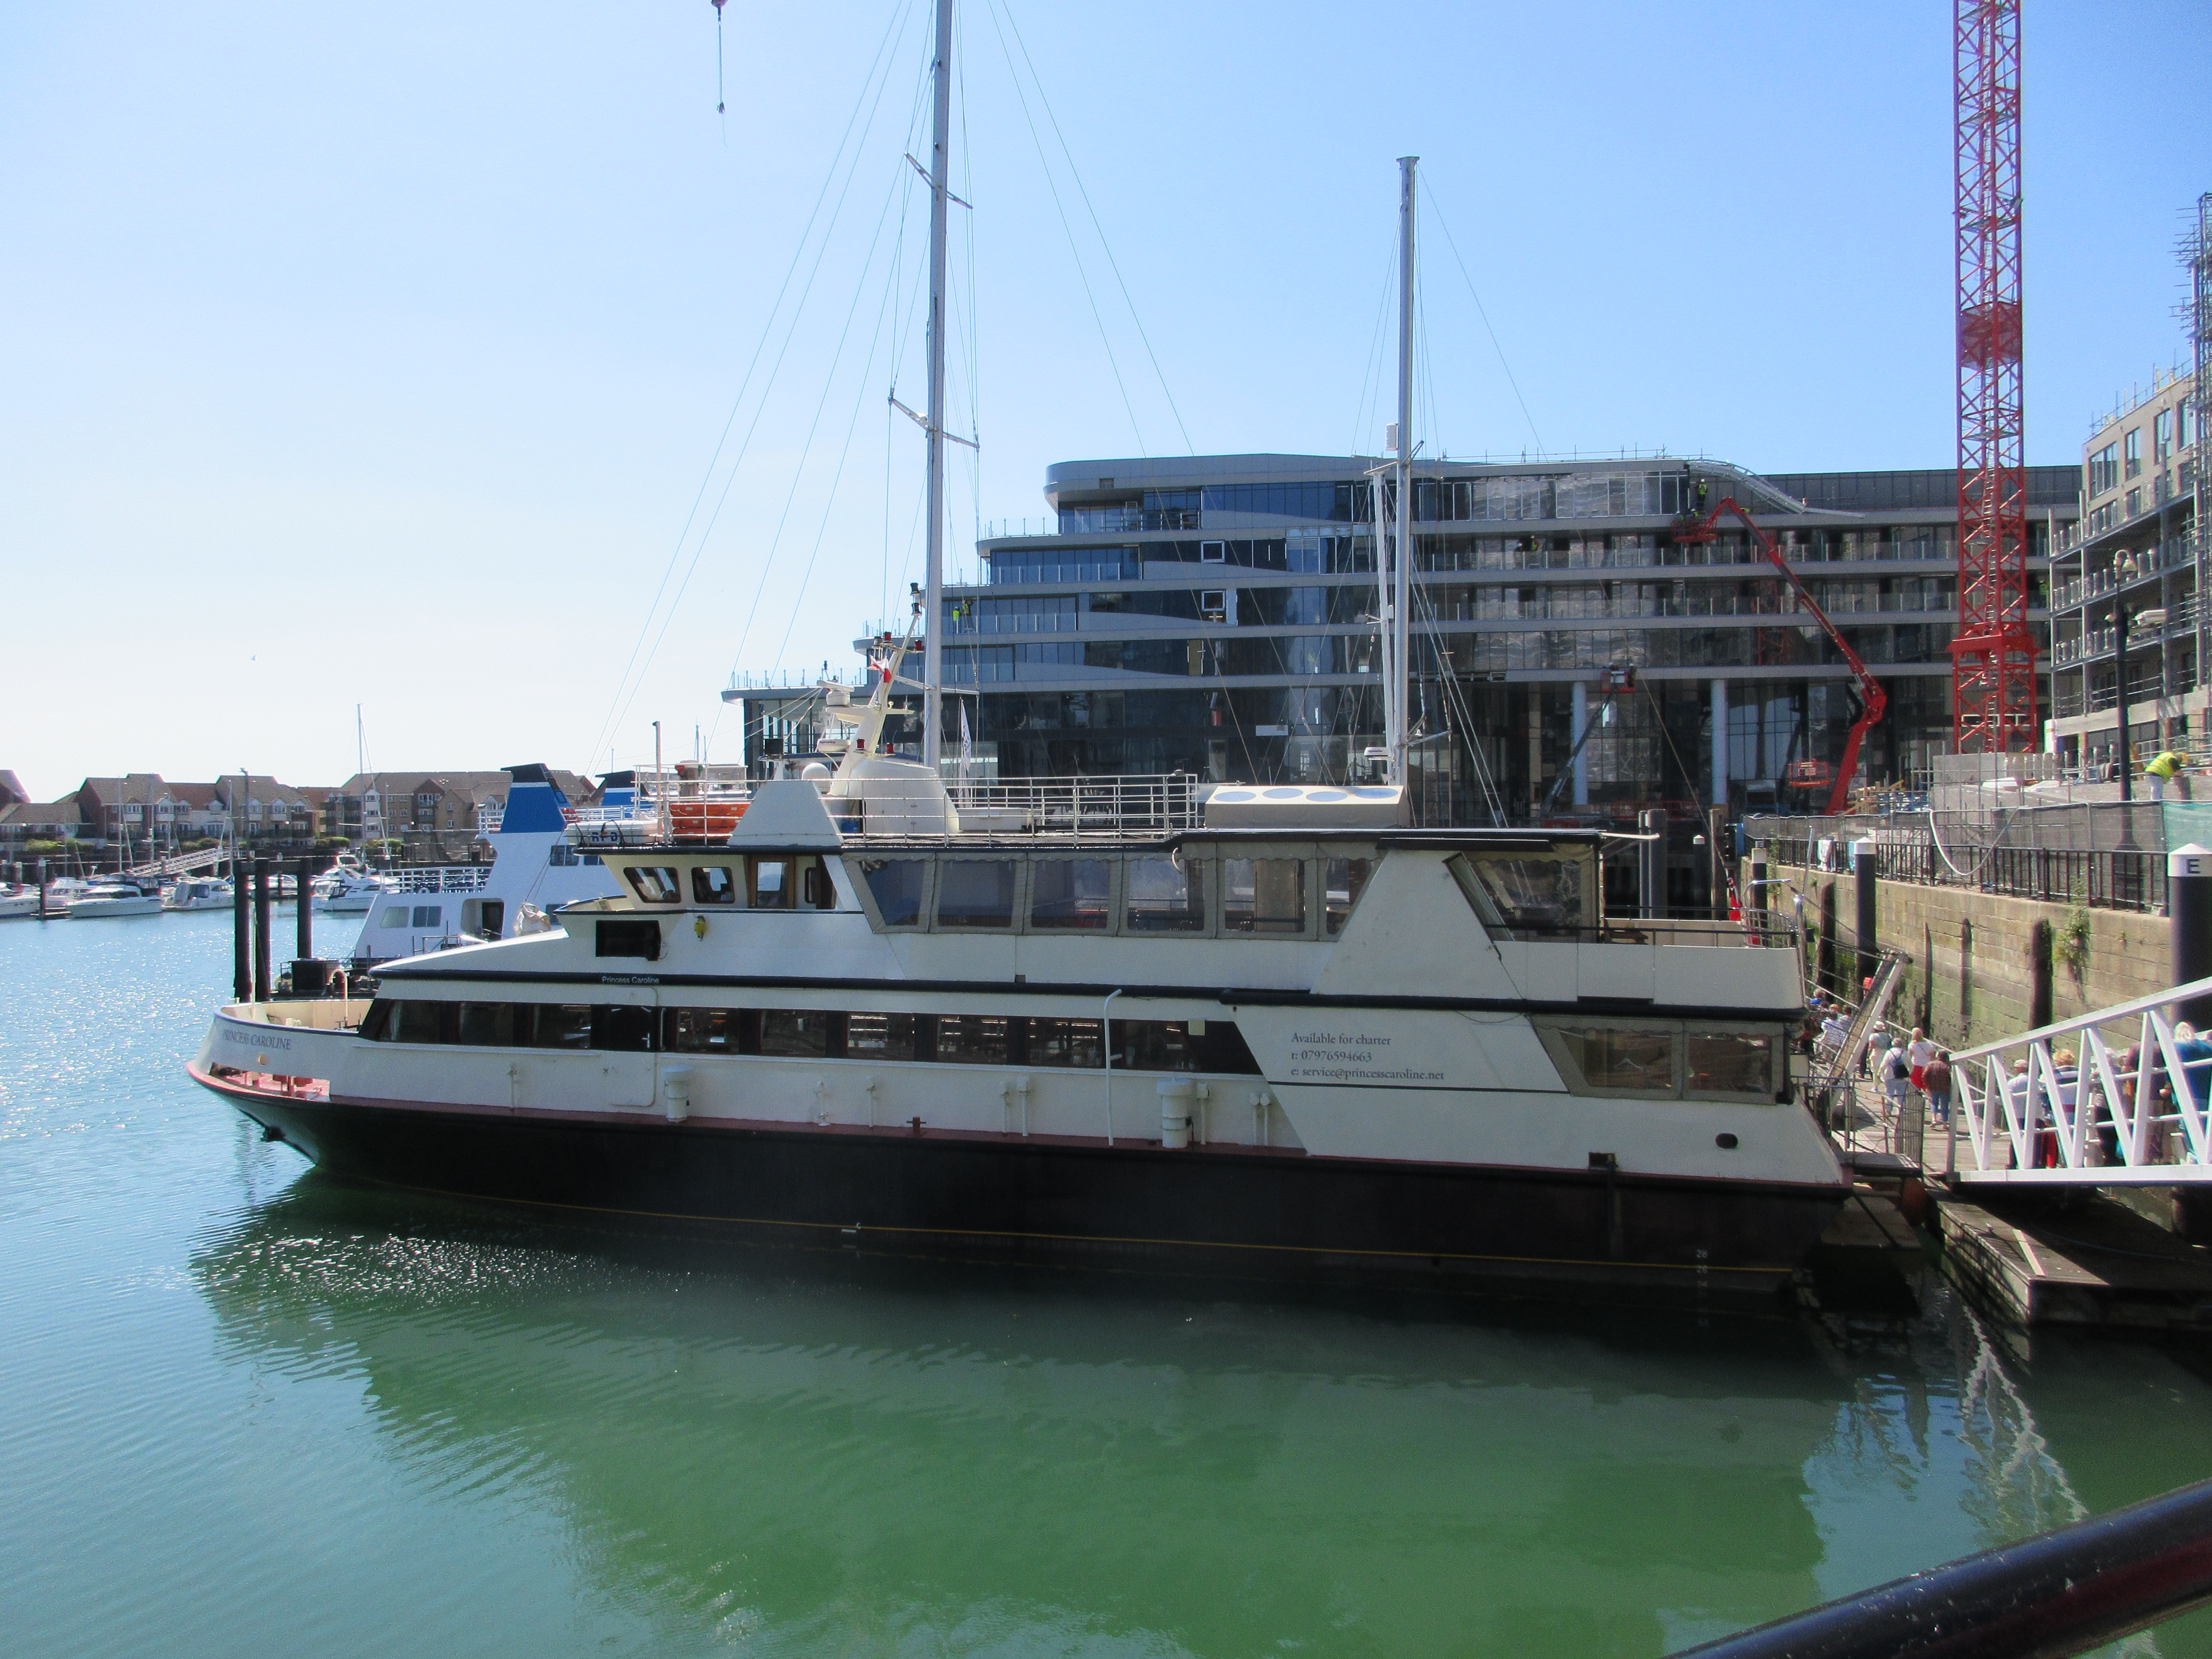 File:MV Princess Caroline party Ship Ocean Village Southampton.jpg ...